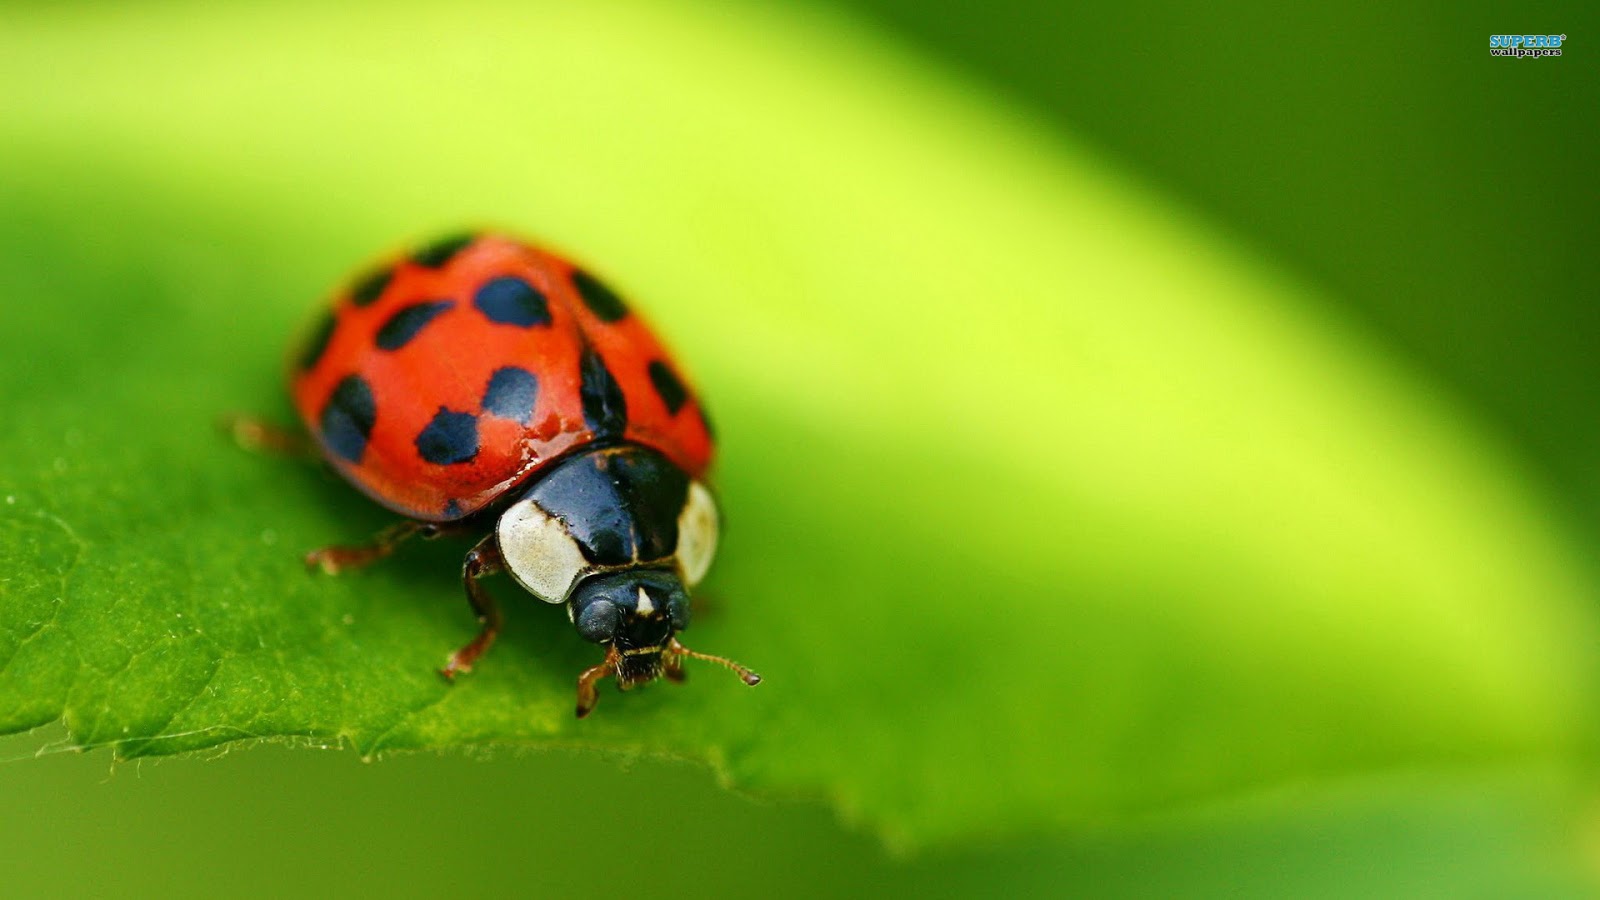 bug wallpaper,insect,ladybug,macro photography,beetle,invertebrate